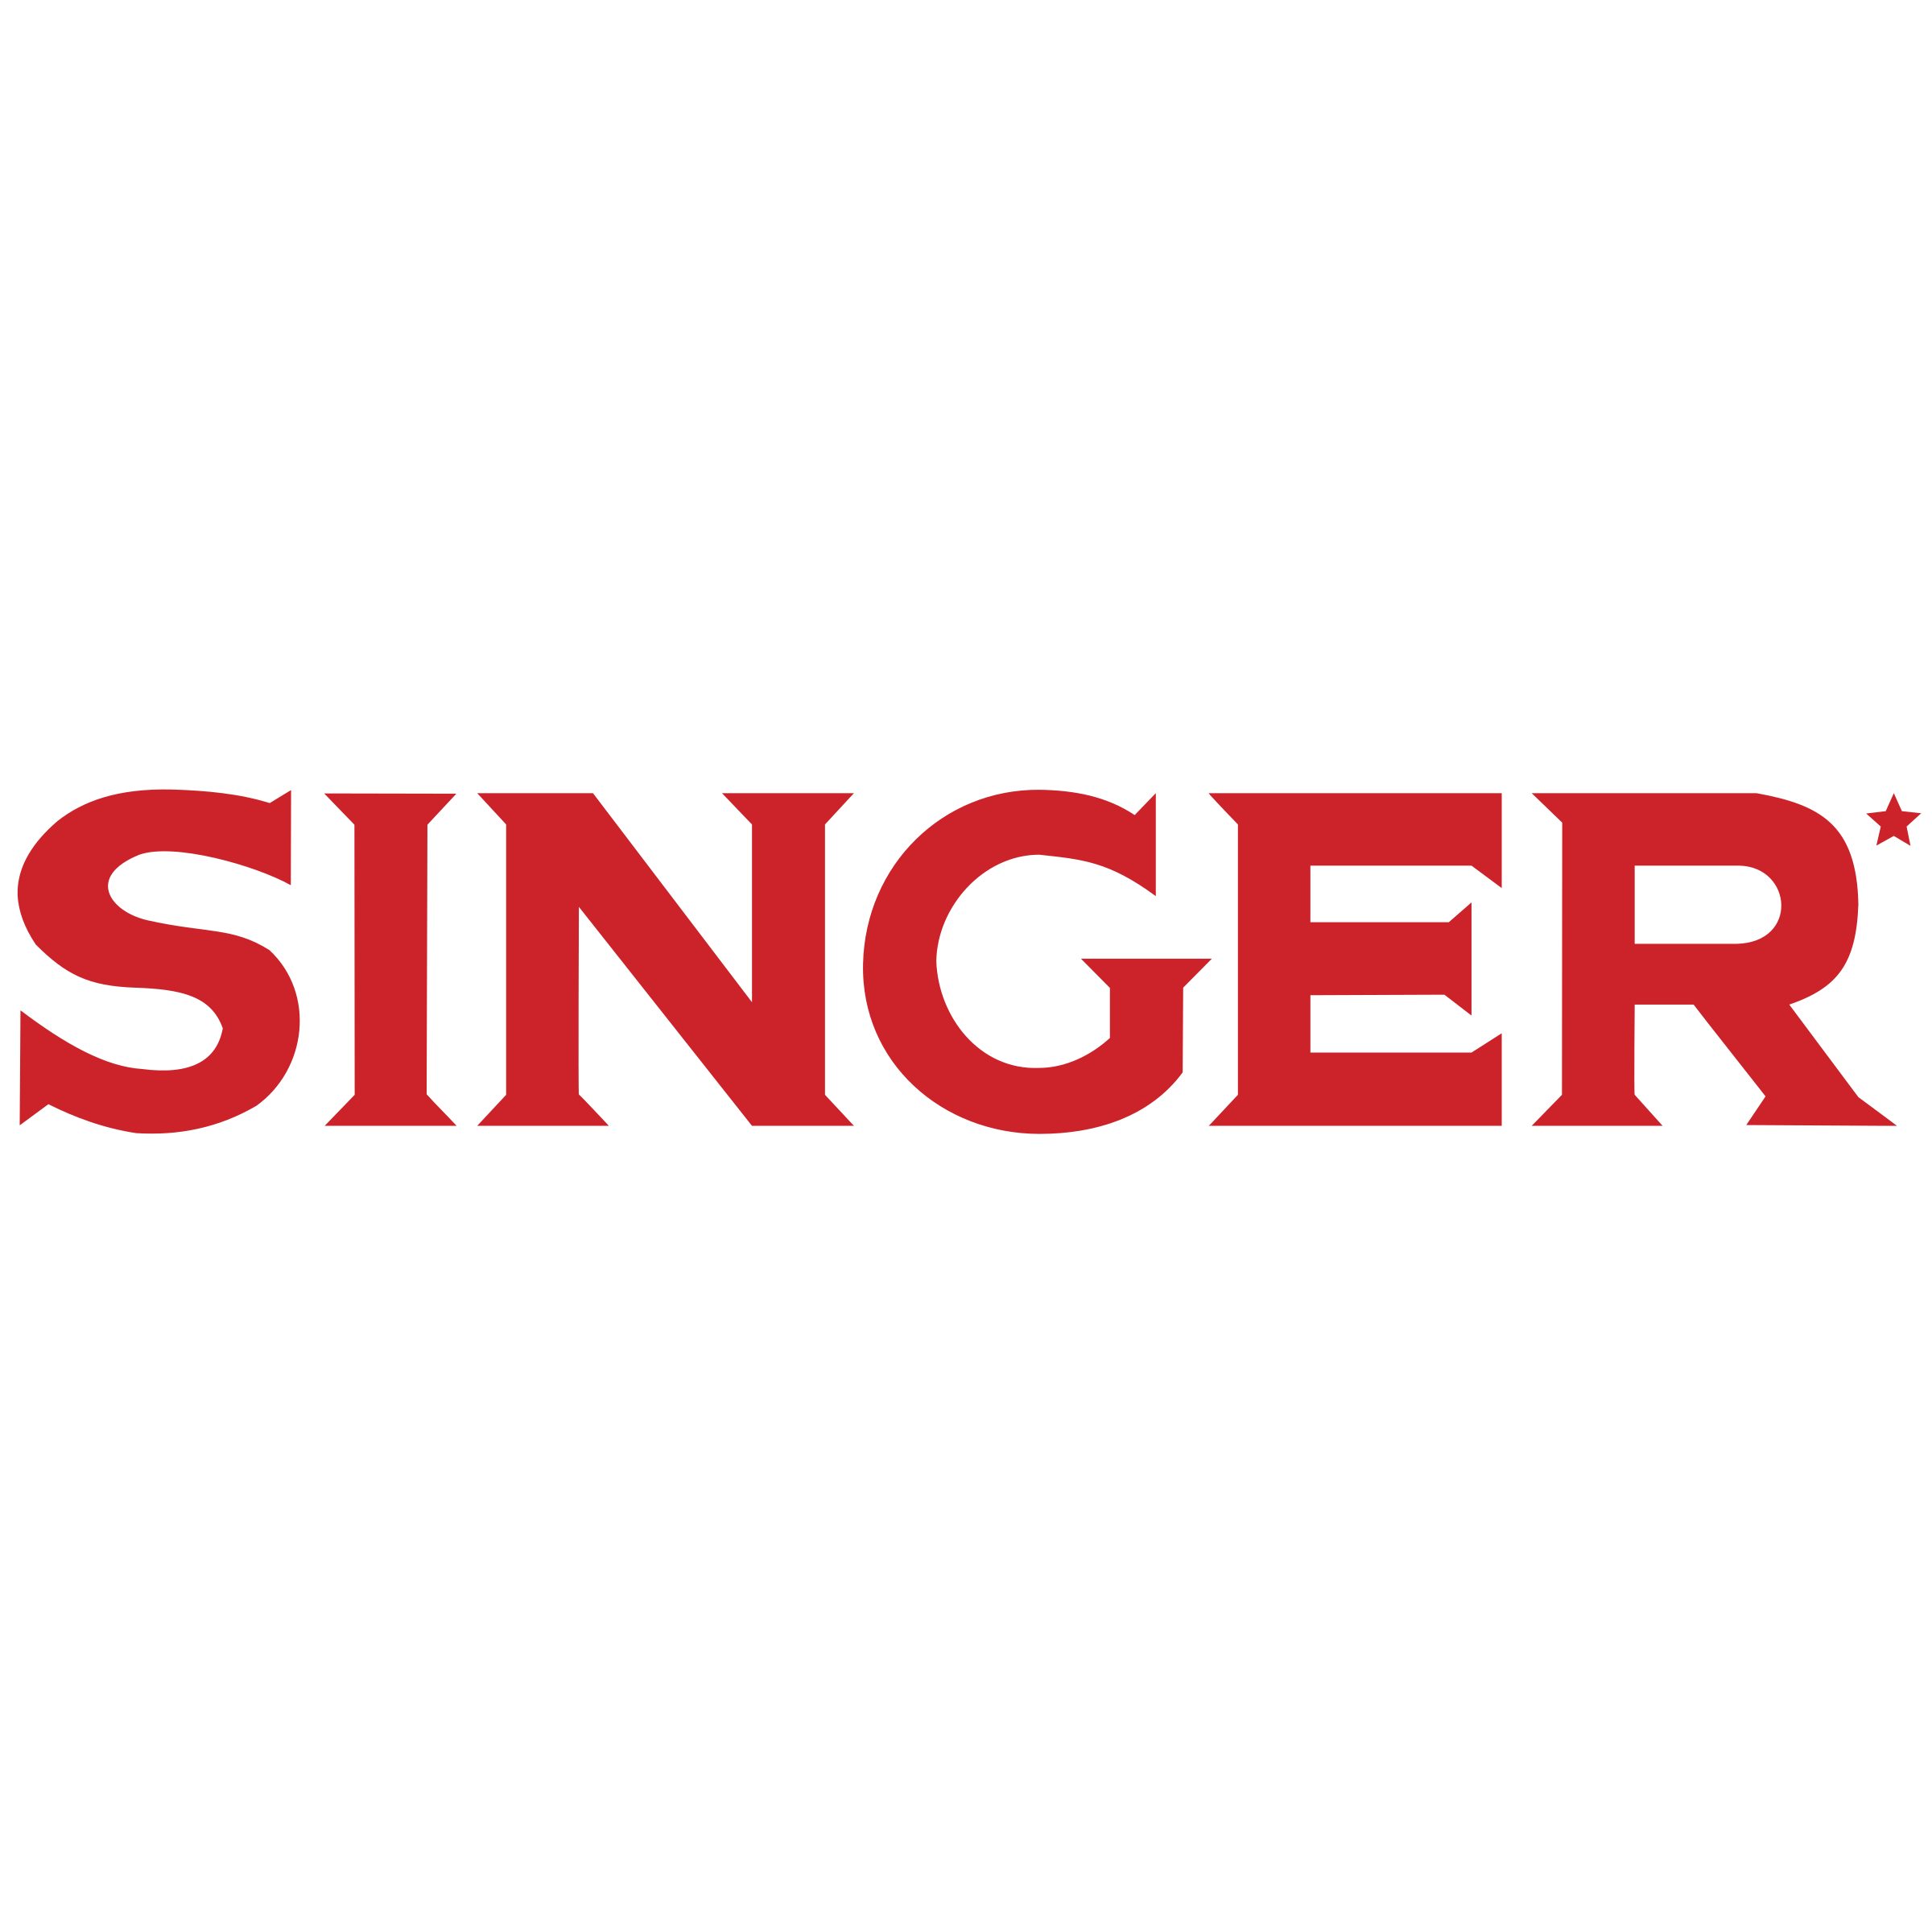 singer-3-logo-png-transparent